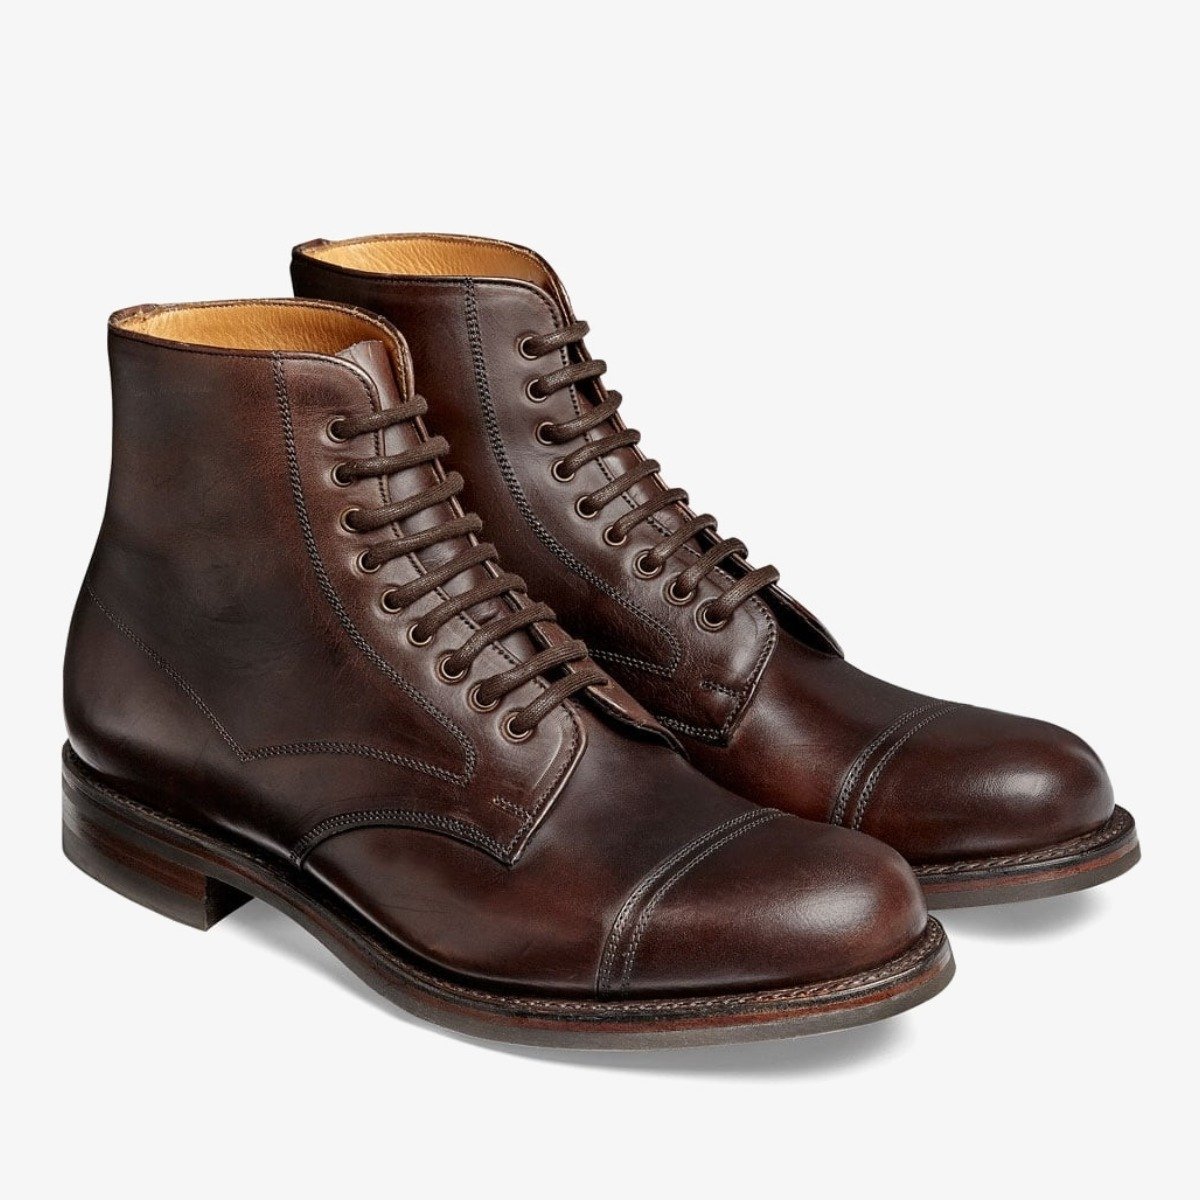 Patvarūs auliniai batai - 5 universalūs vyriški auliniai batai rudeniui ir žiemai